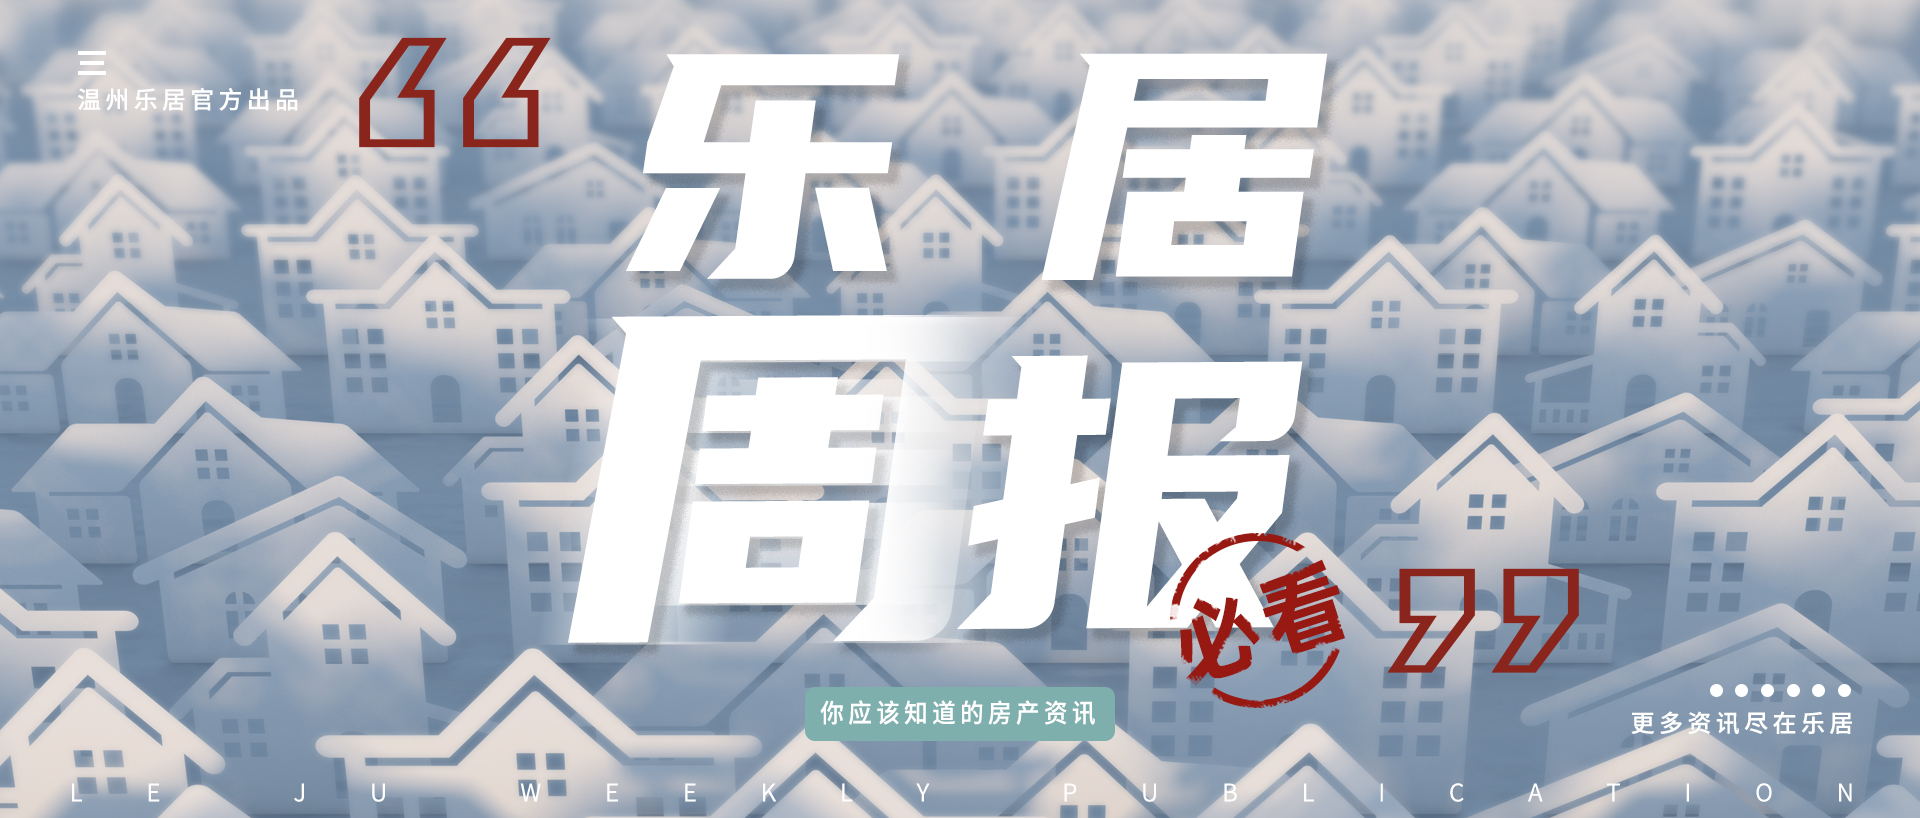 【温州乐居房产周报】（2020.05.22-2020.05.28）